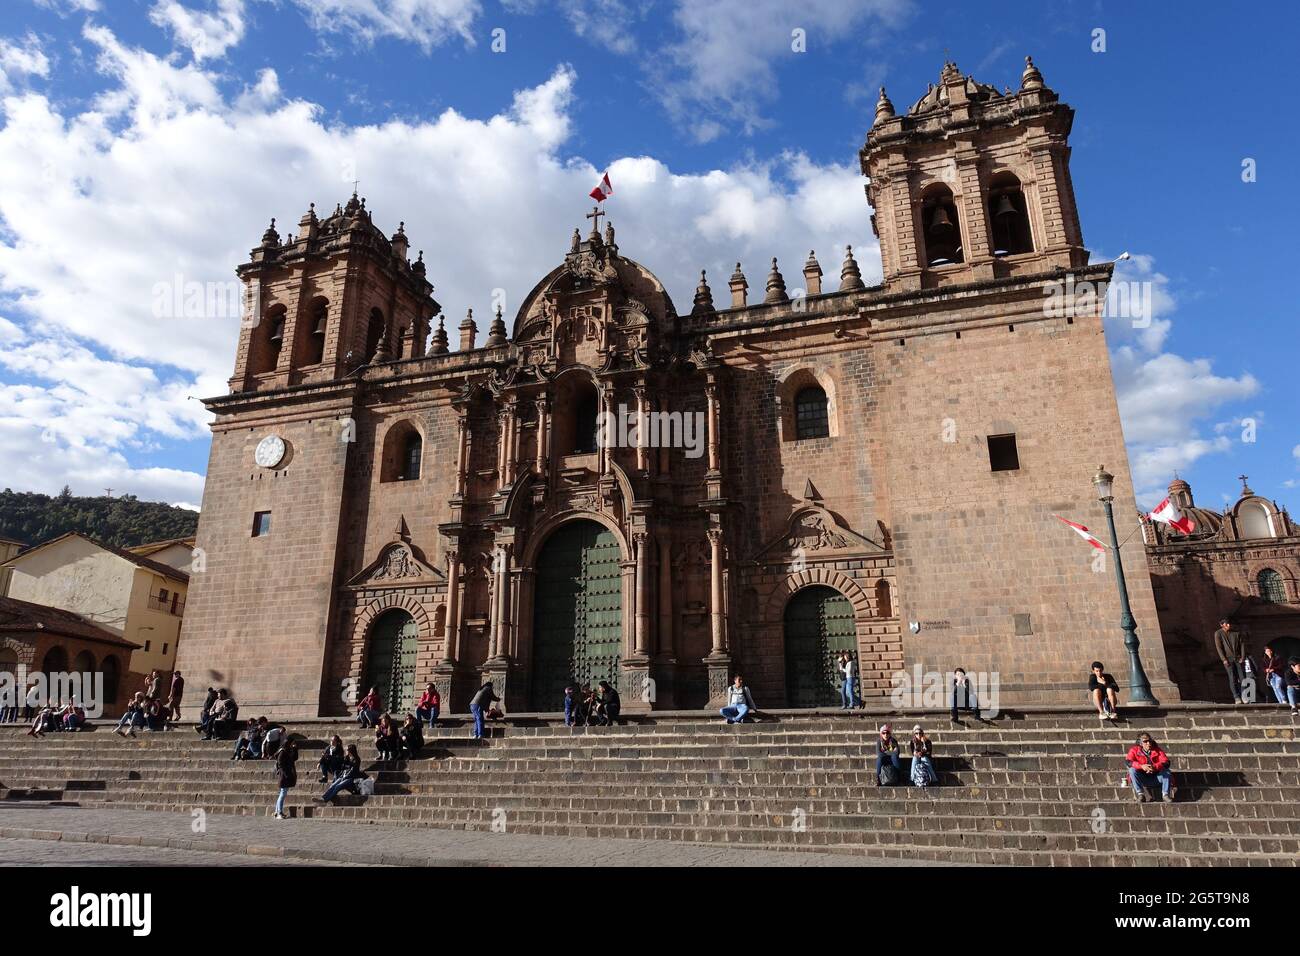 Peru Cusco - Catedral del Cuzco - Cusco Cathedral front facade Stock Photo